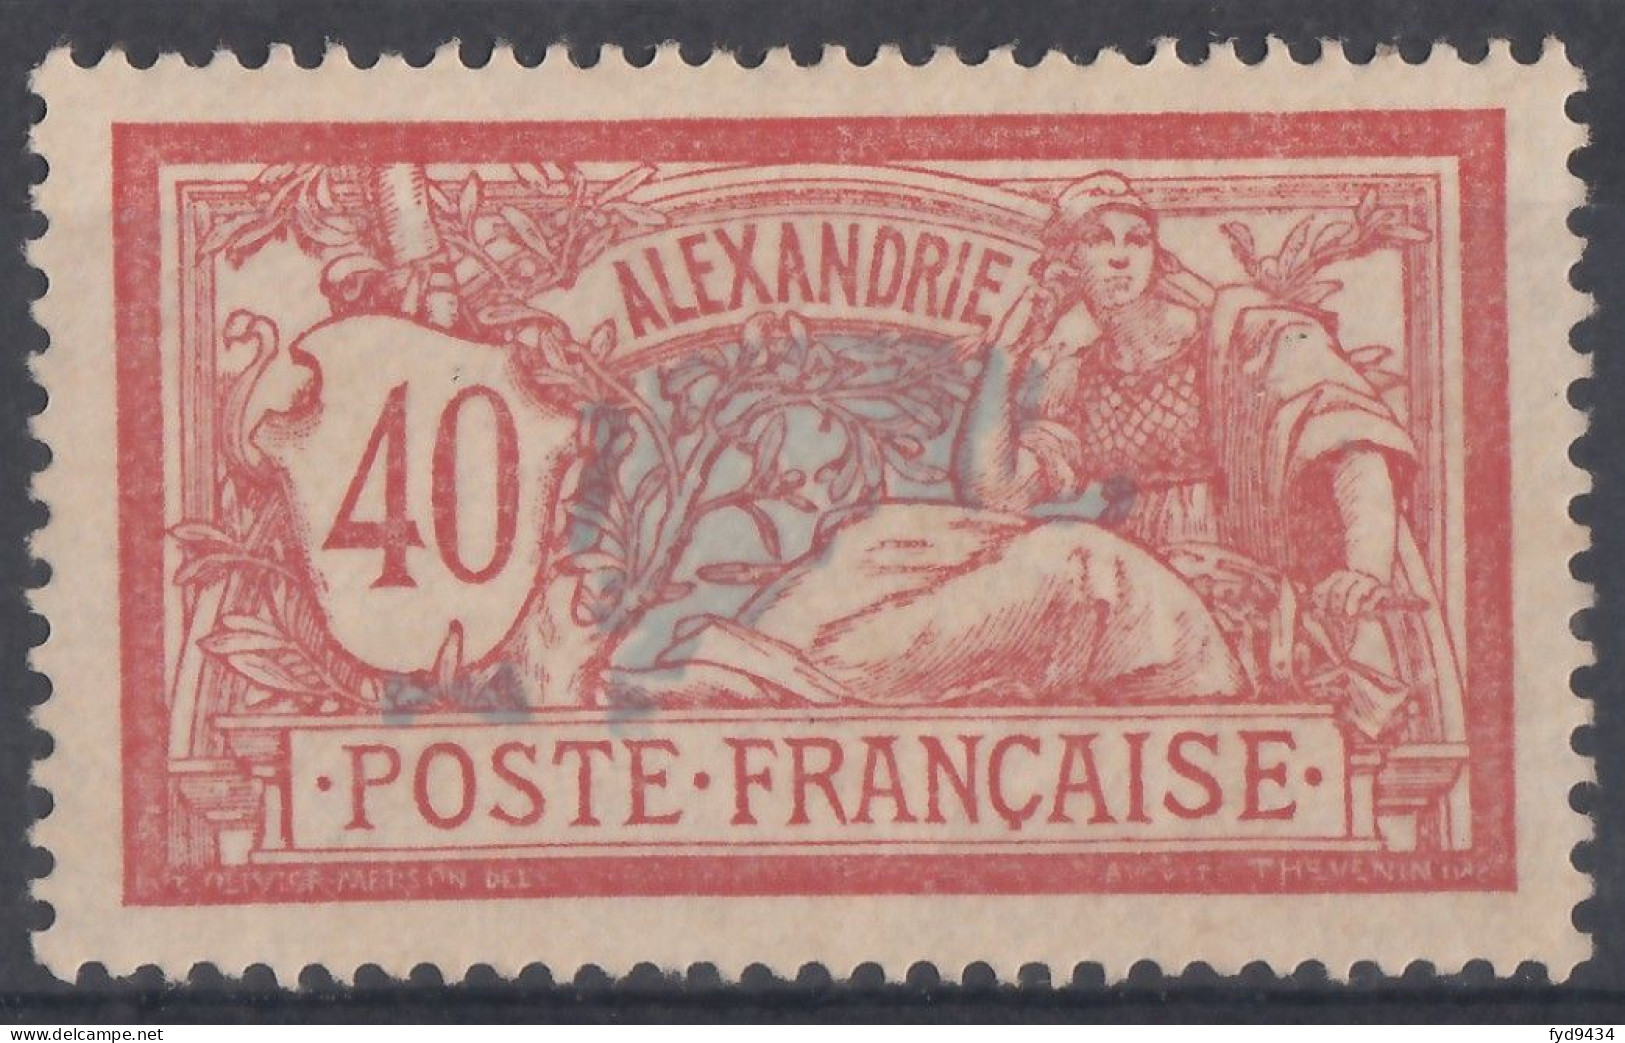 N° 29 - X - ( C 163 ) - Unused Stamps